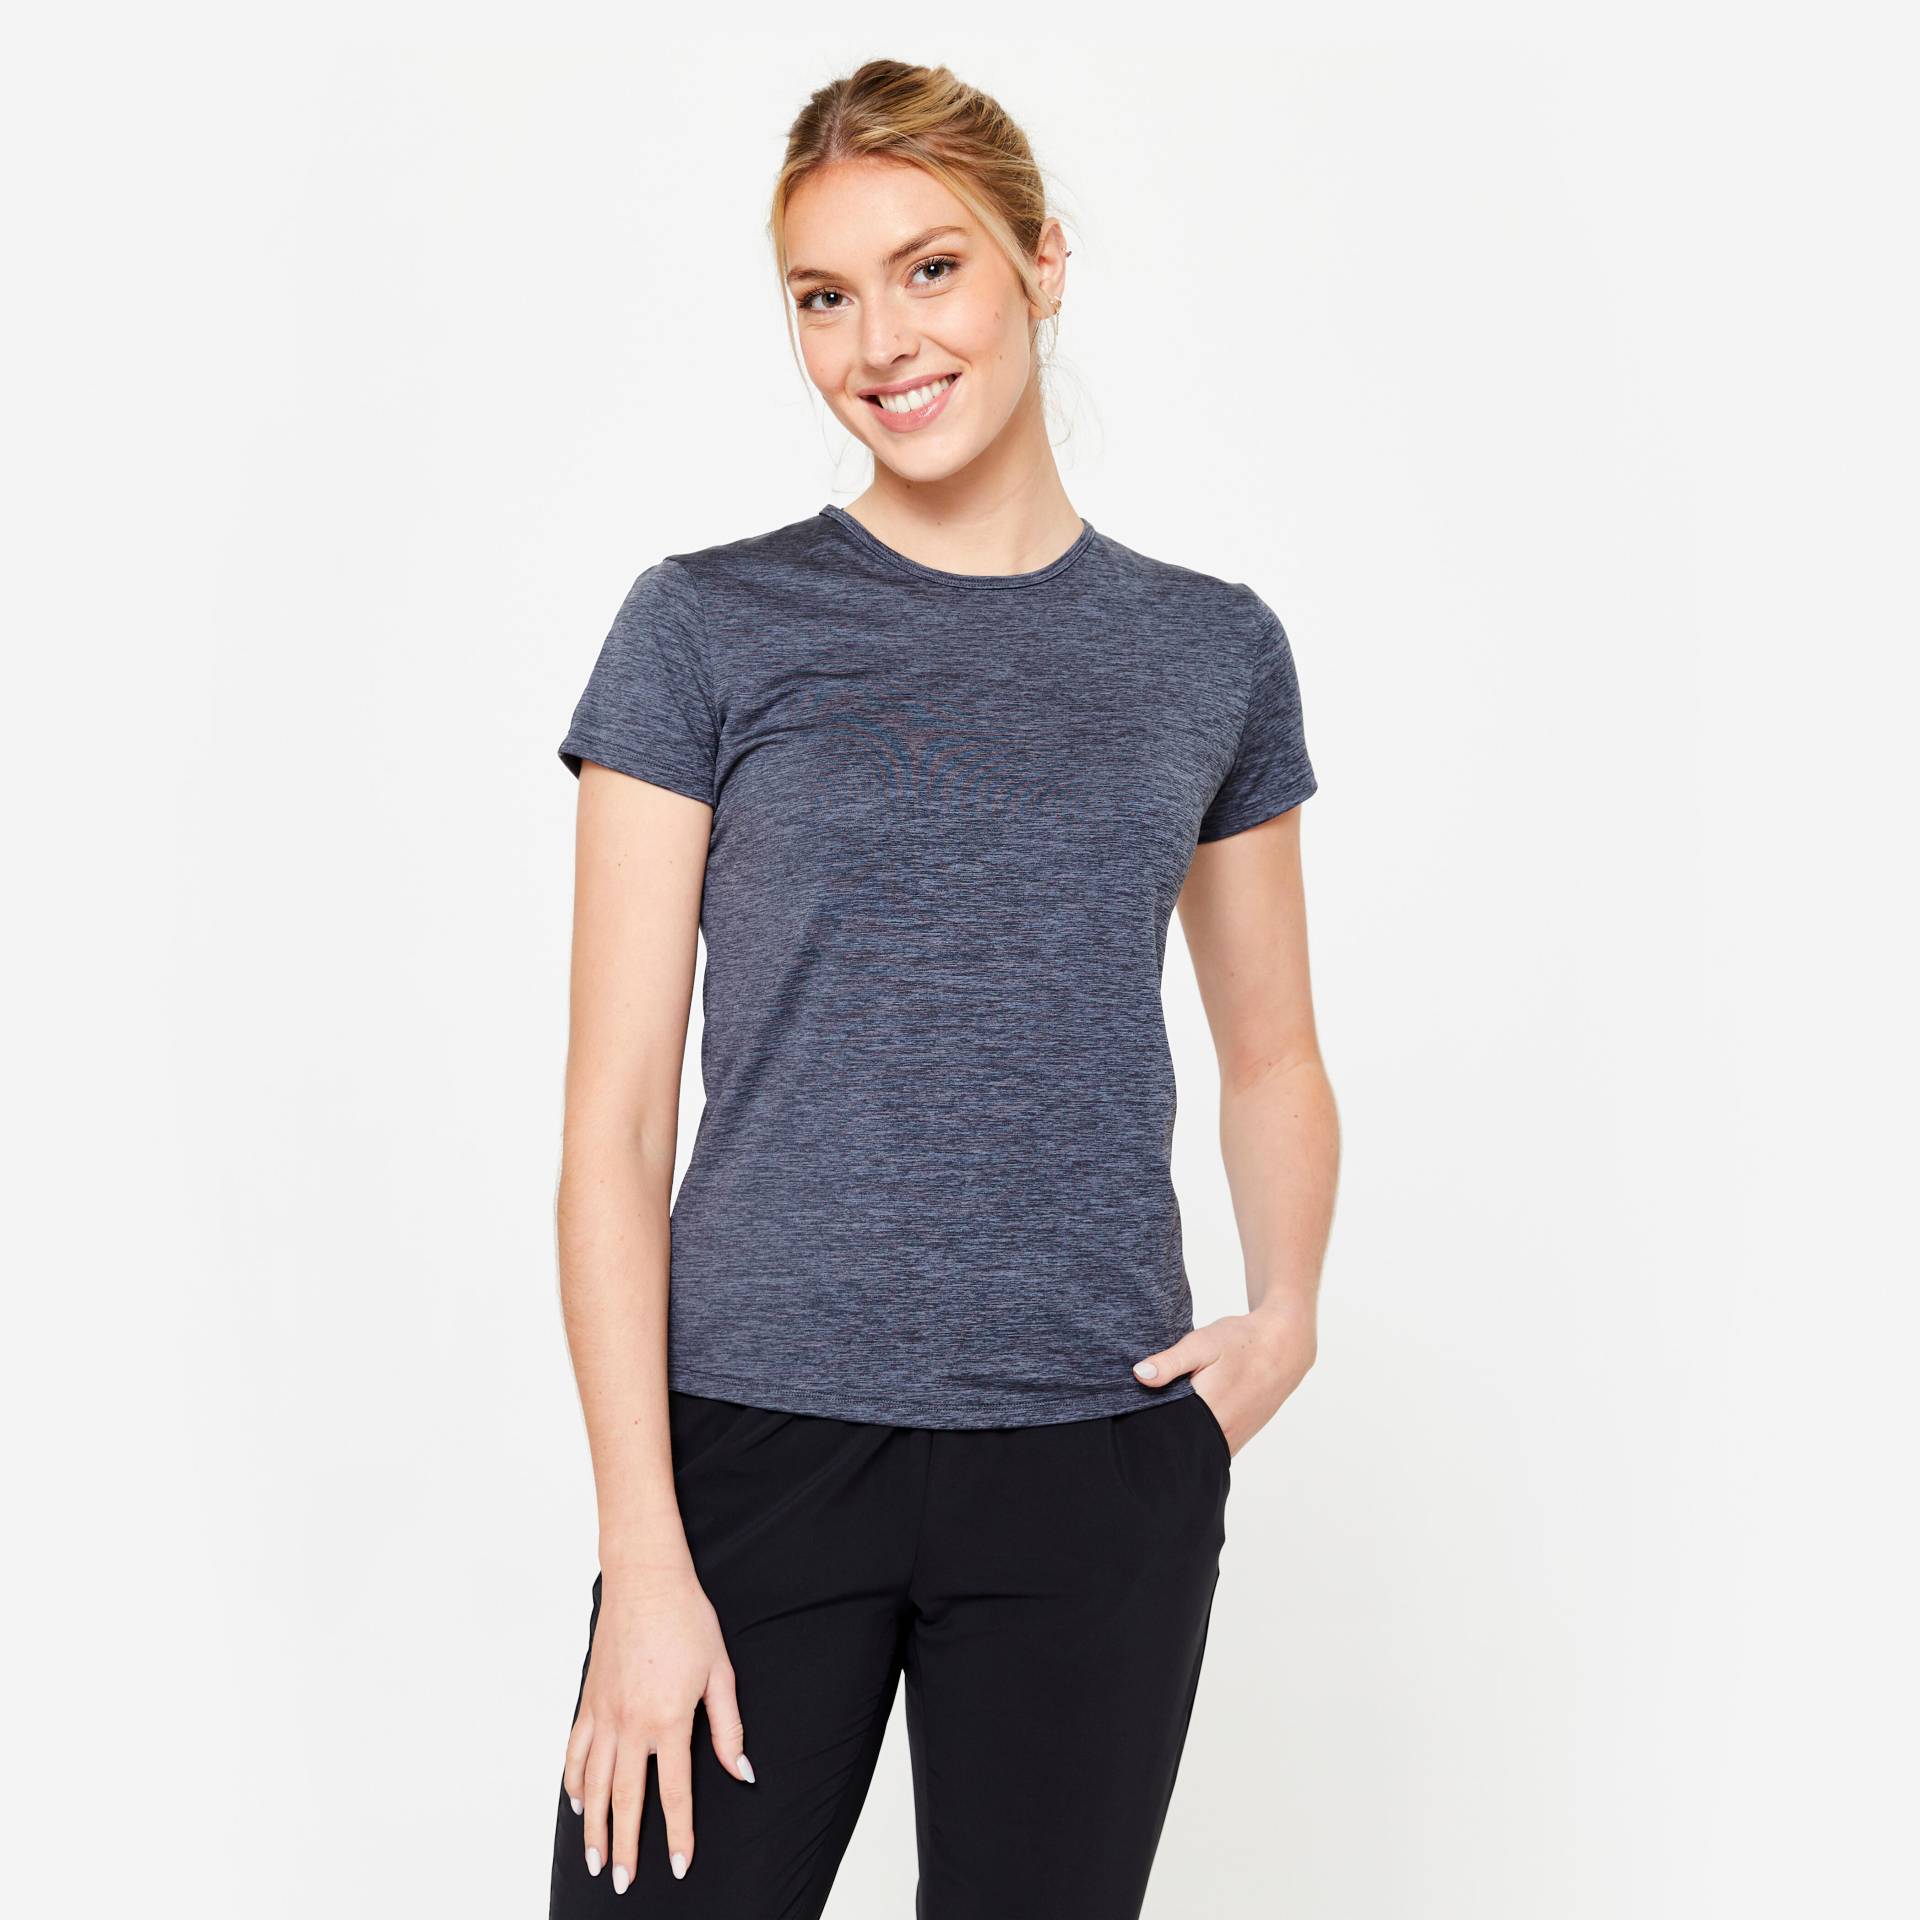 Sport T-Shirt Damen - 100 grau meliert von Domyos